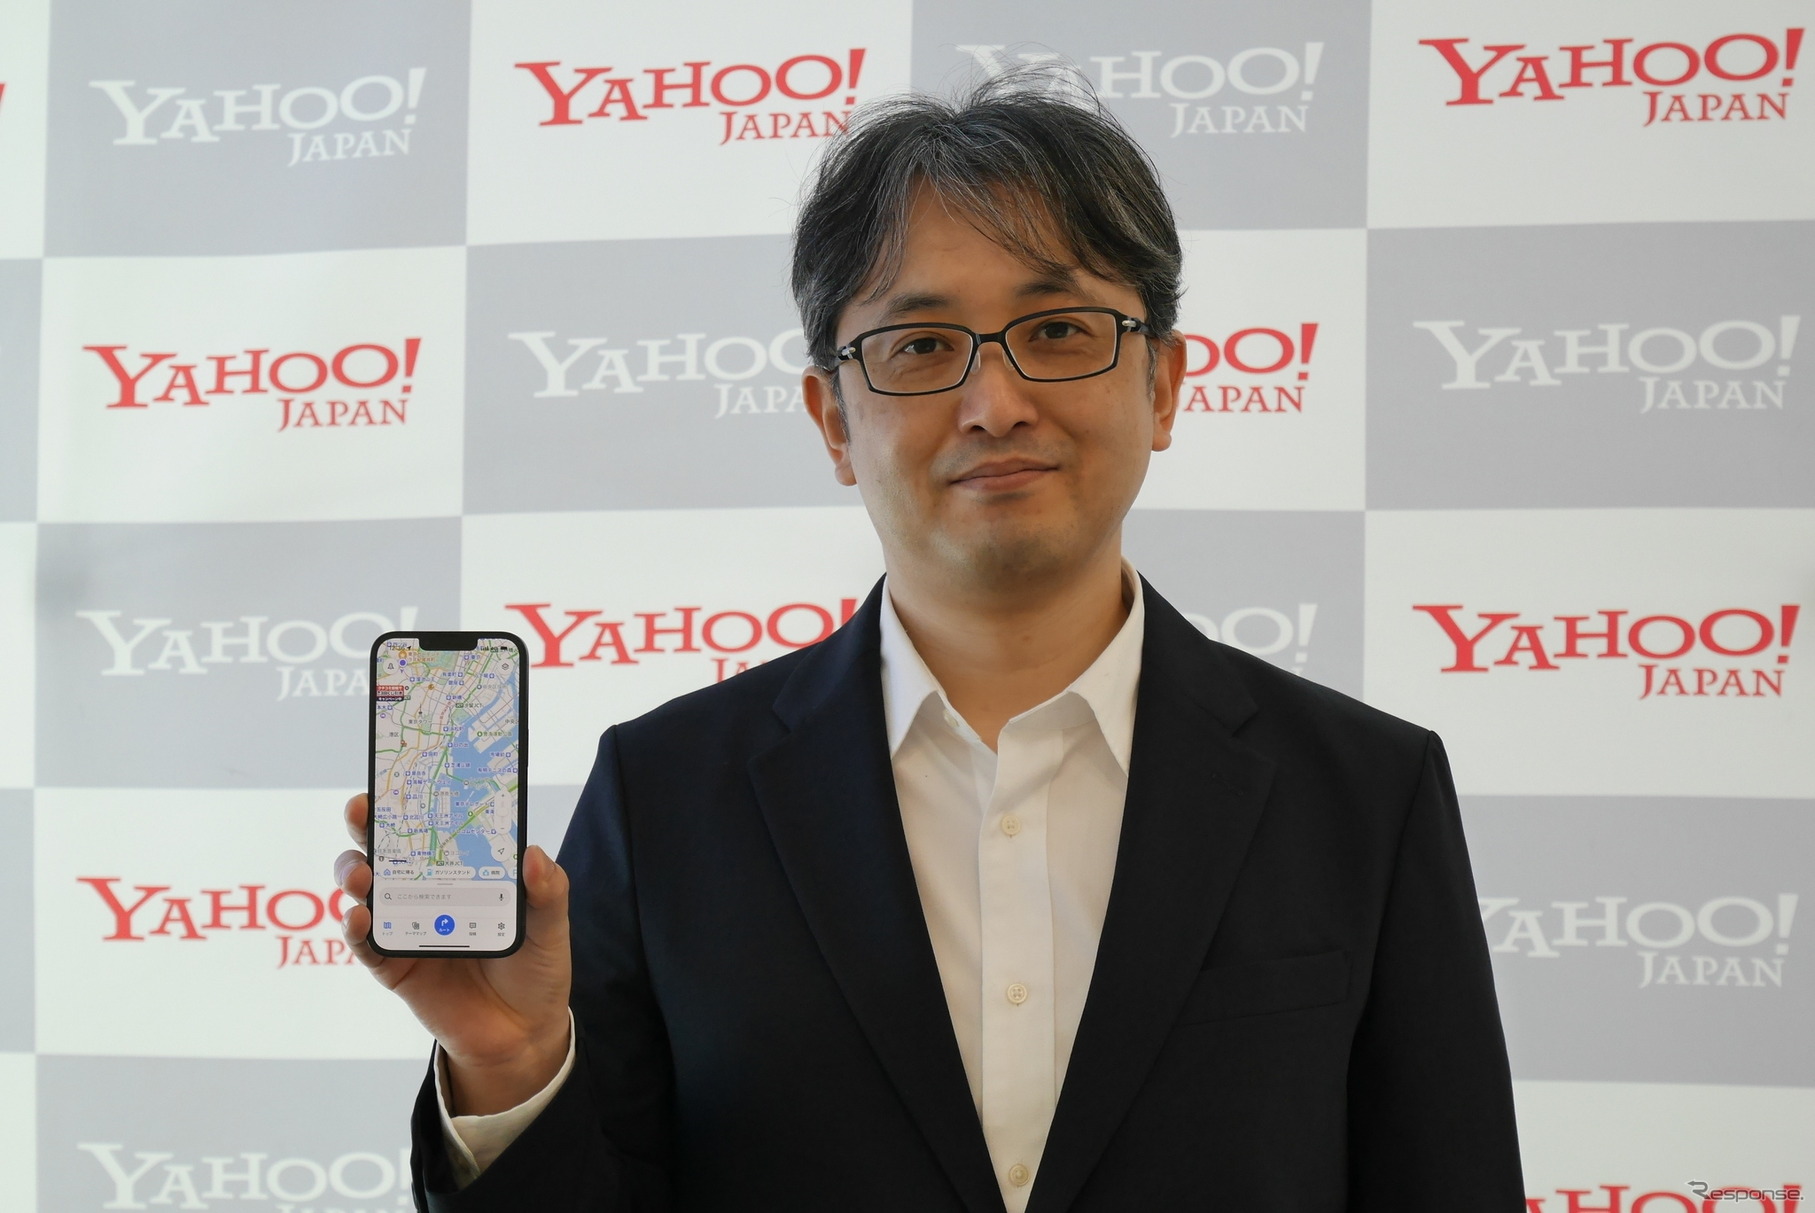 Yahoo! JAPAN 検索グループローカル統括本部企画デザイン本部の今坂健一氏